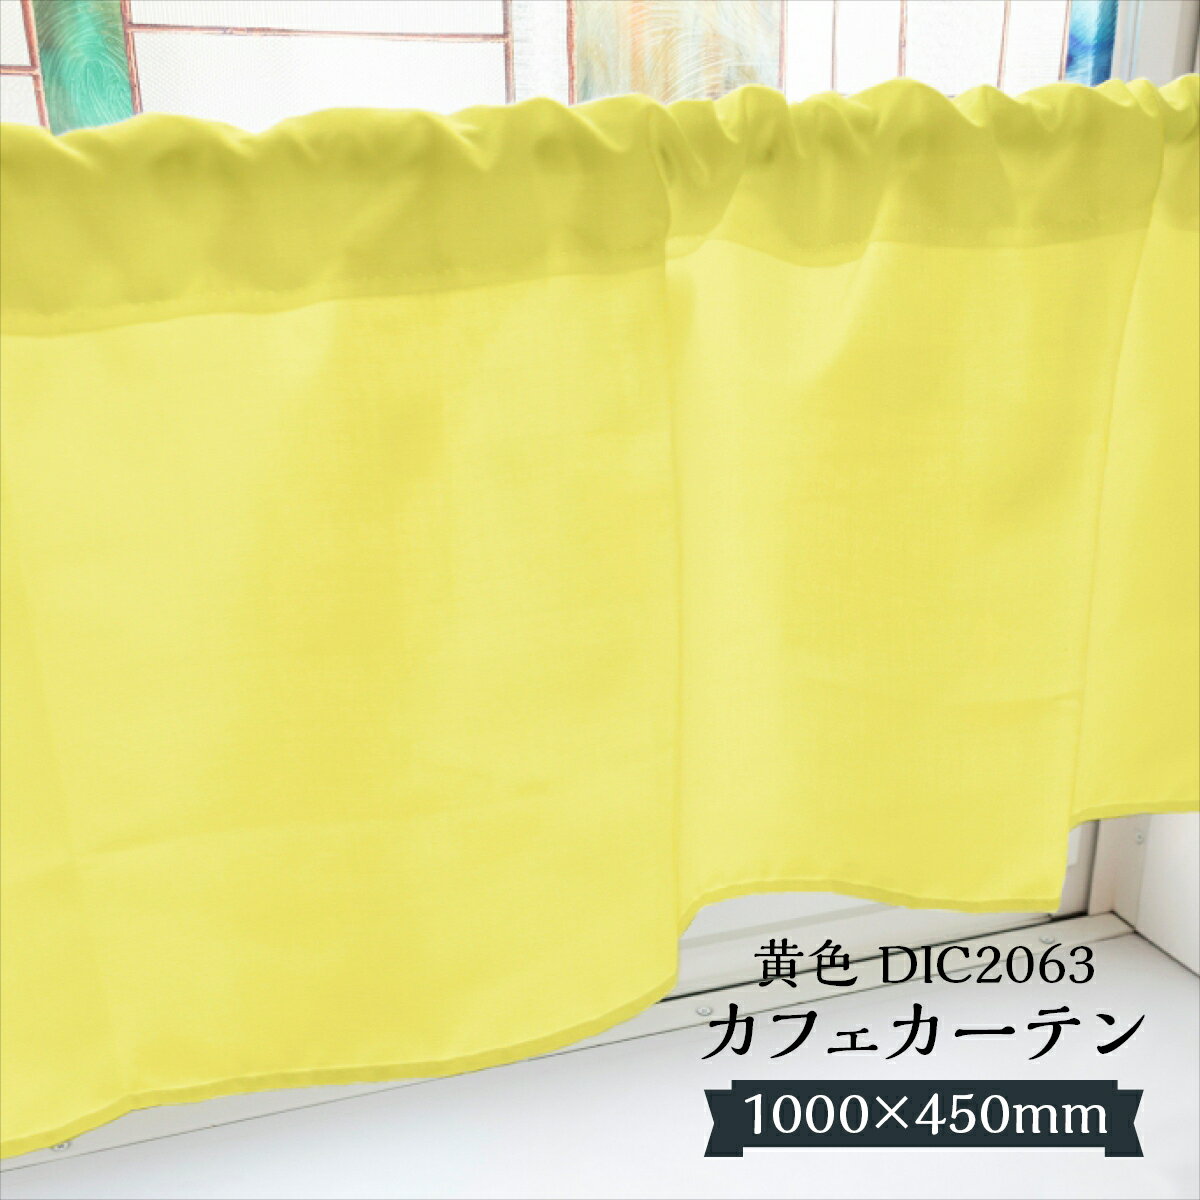 カフェカーテン 黄色 DIC2063 1000×450mm